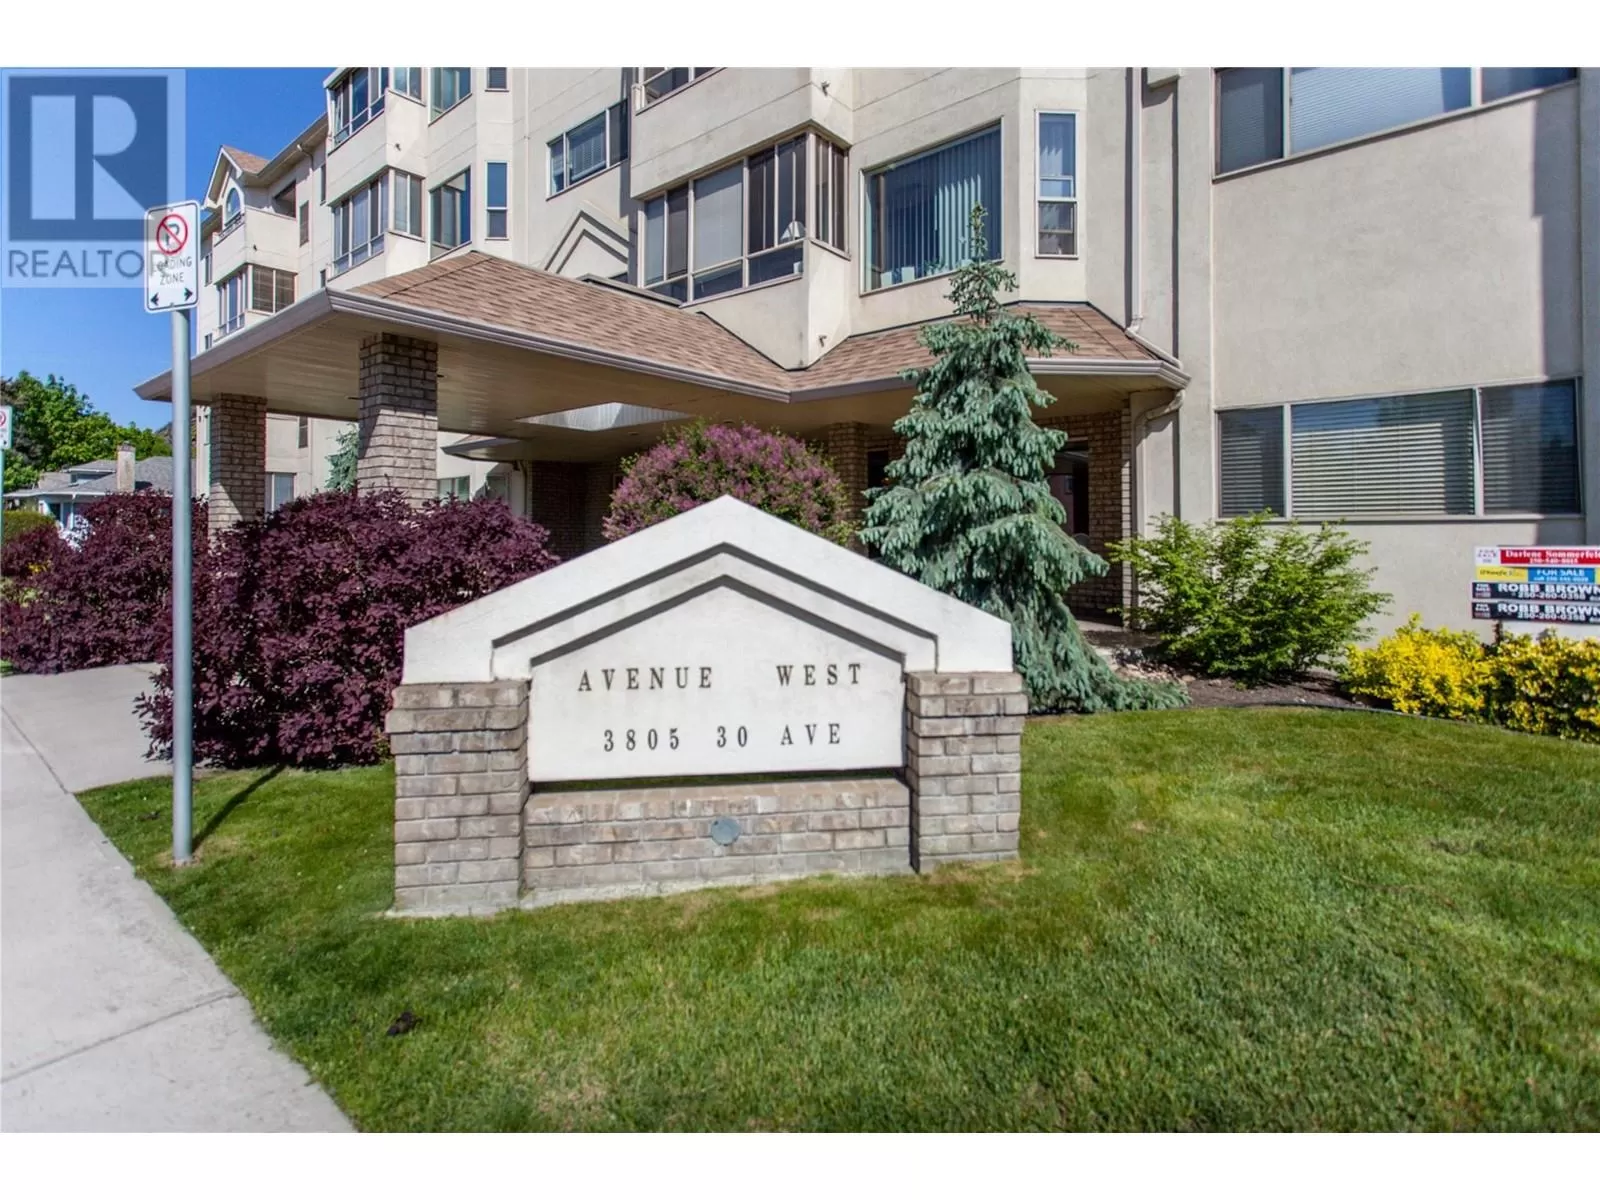 Apartment for rent: 3805 30 Avenue Unit# 203, Vernon, British Columbia V1T 9M3